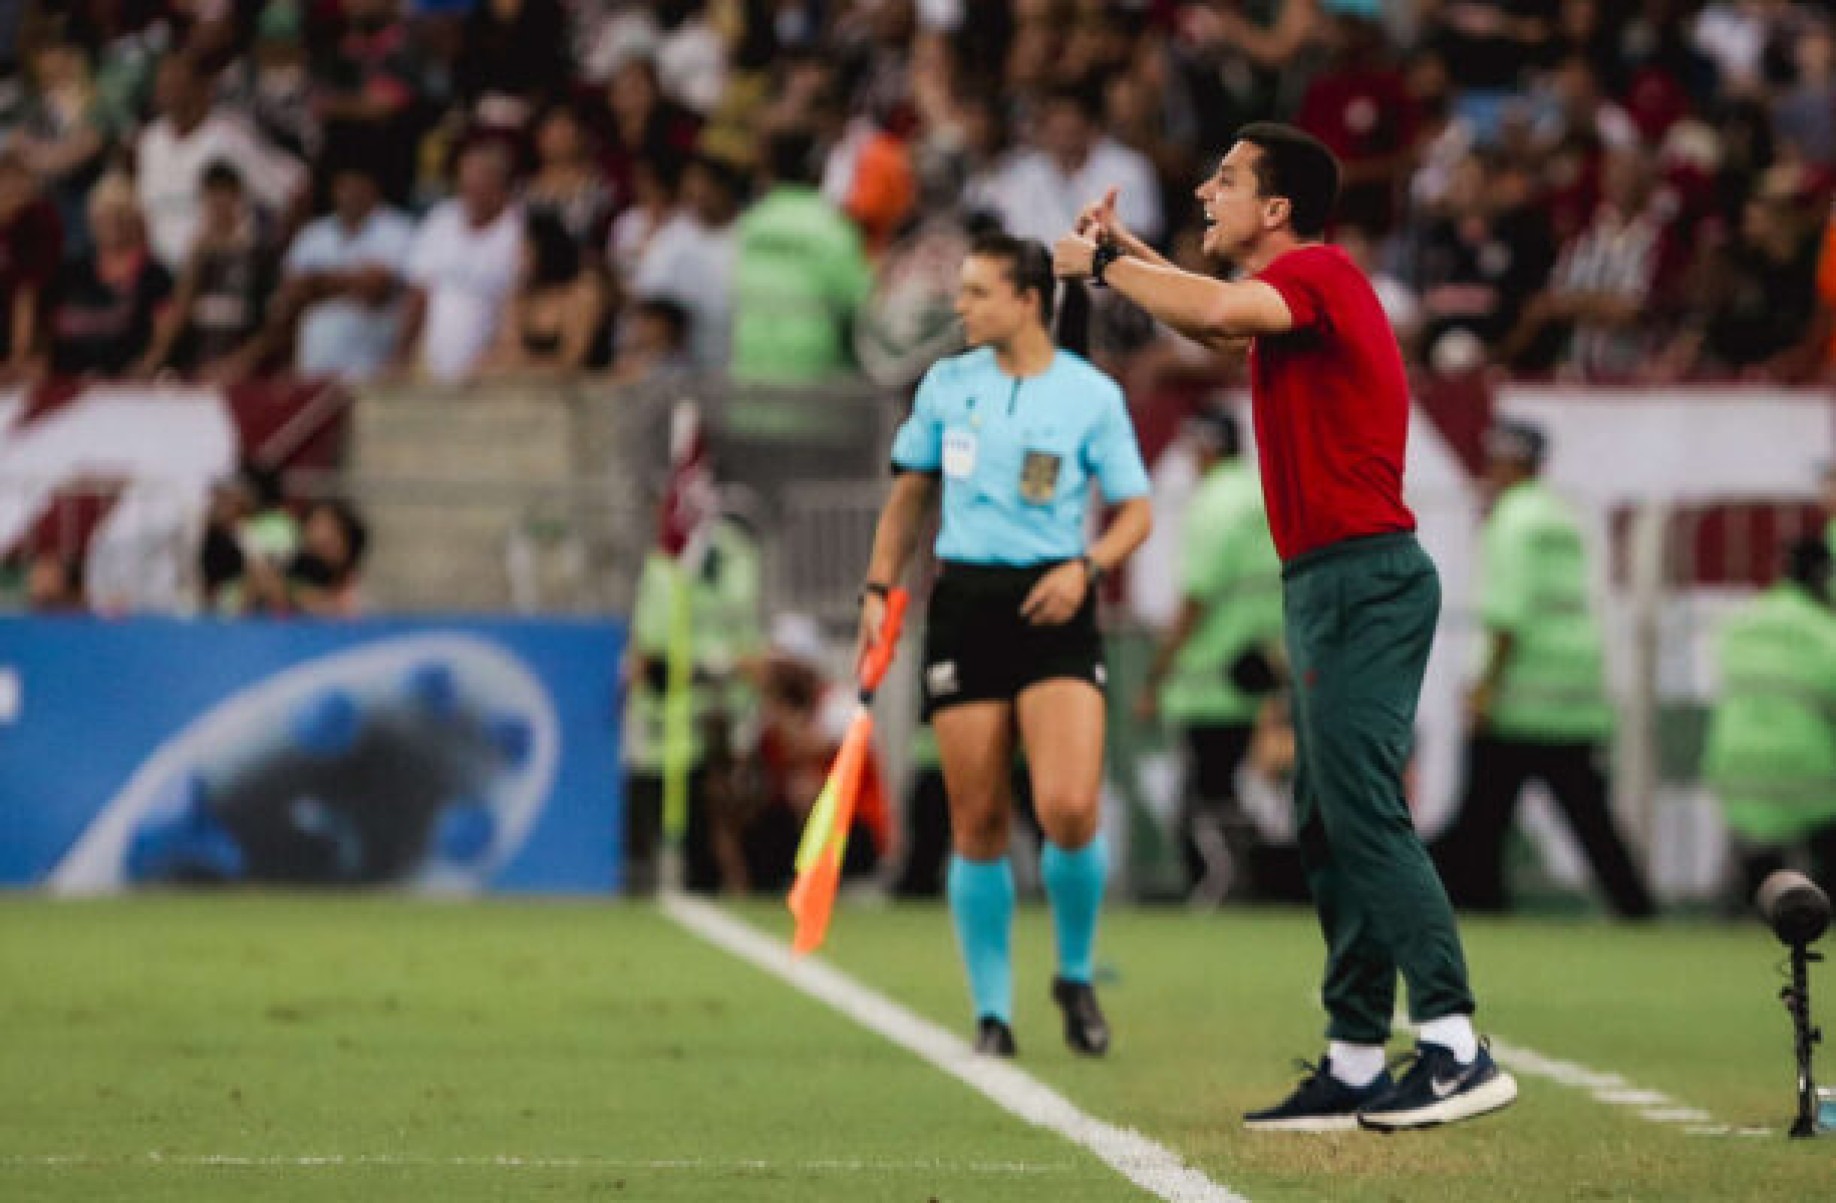 Eduardo Barros exime Fábio de culpa em empate do Fluminense: ‘Inerente ao jogo’